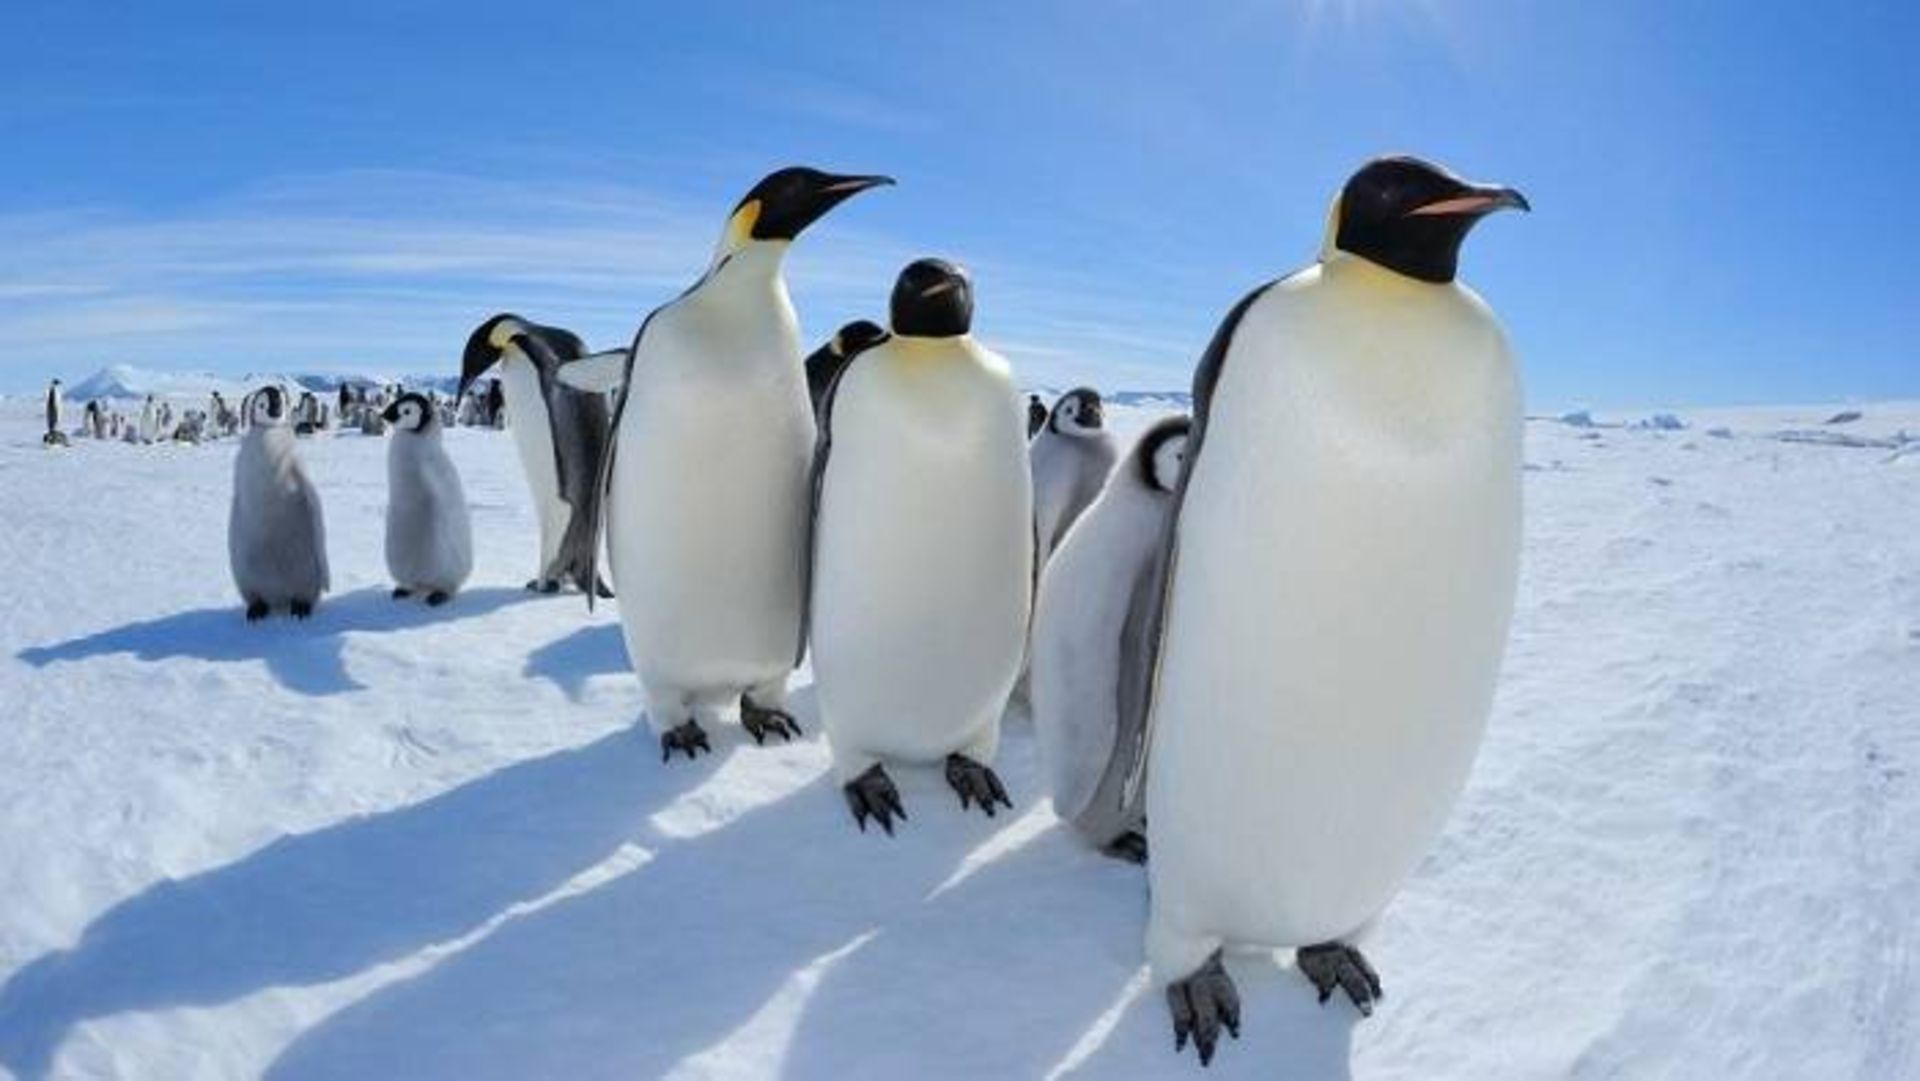 پنگوئن امپراتور / emperor penguins